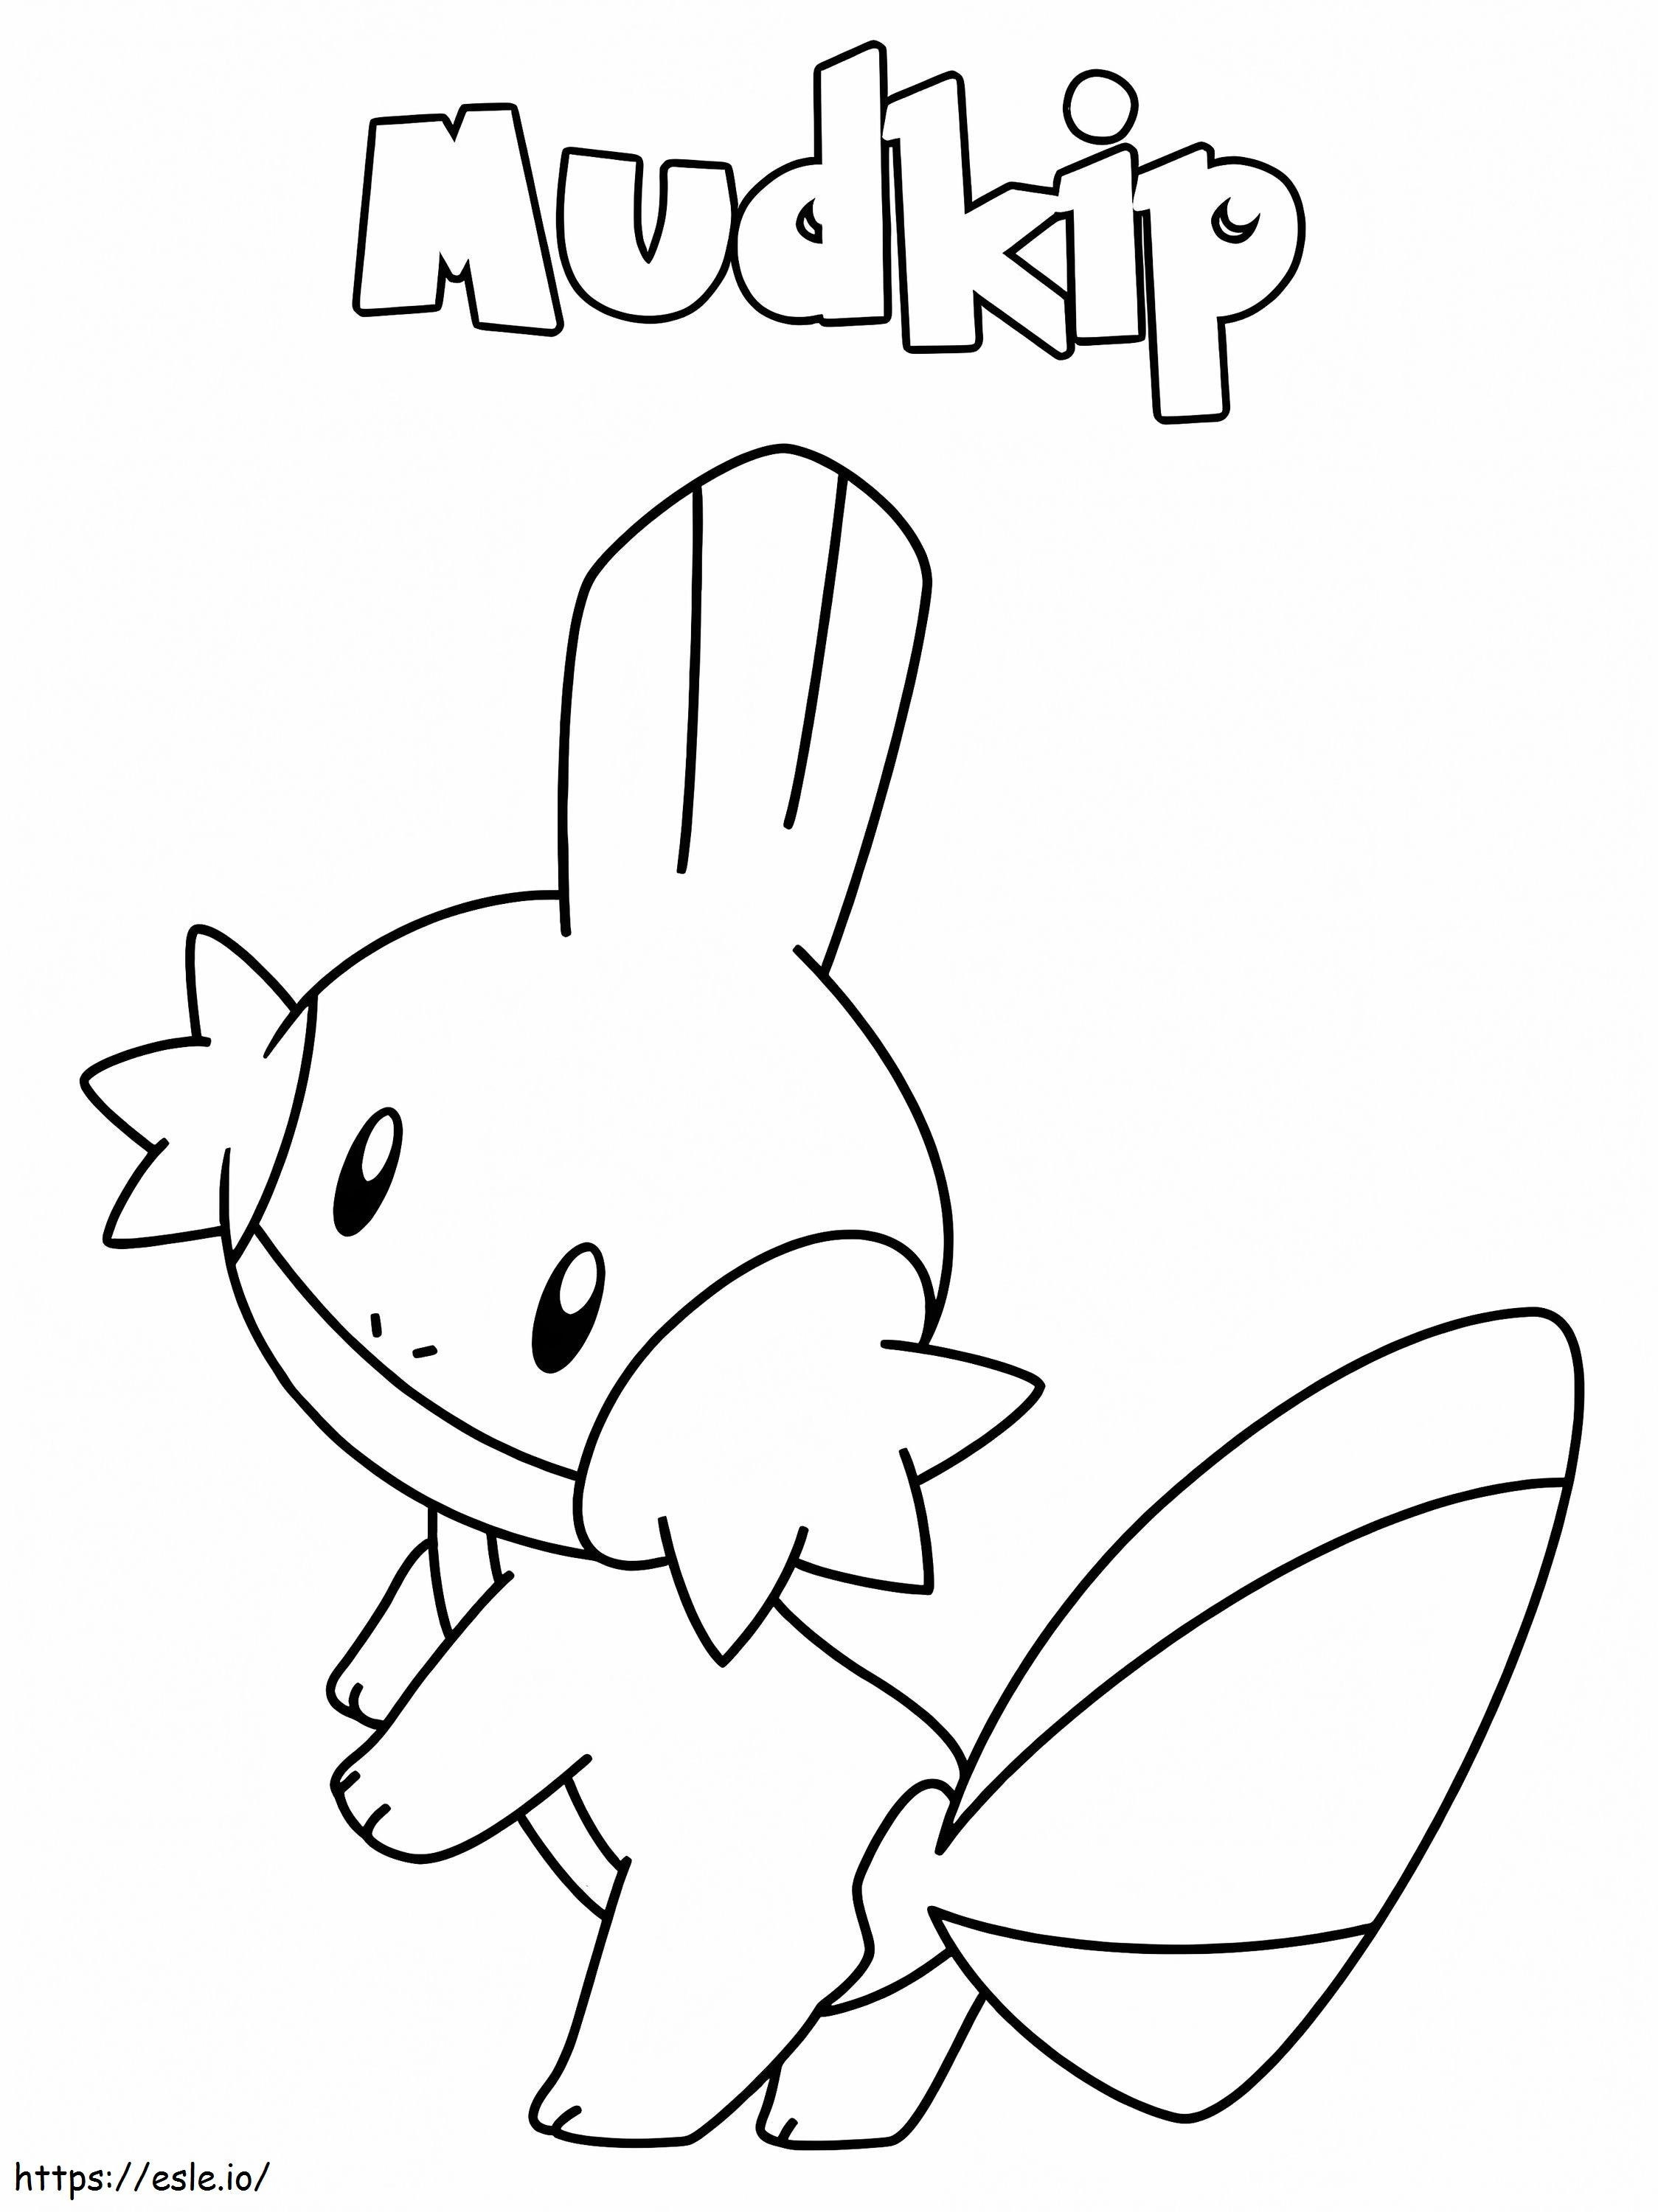 Imprimir Pokémon Mudkip para colorir